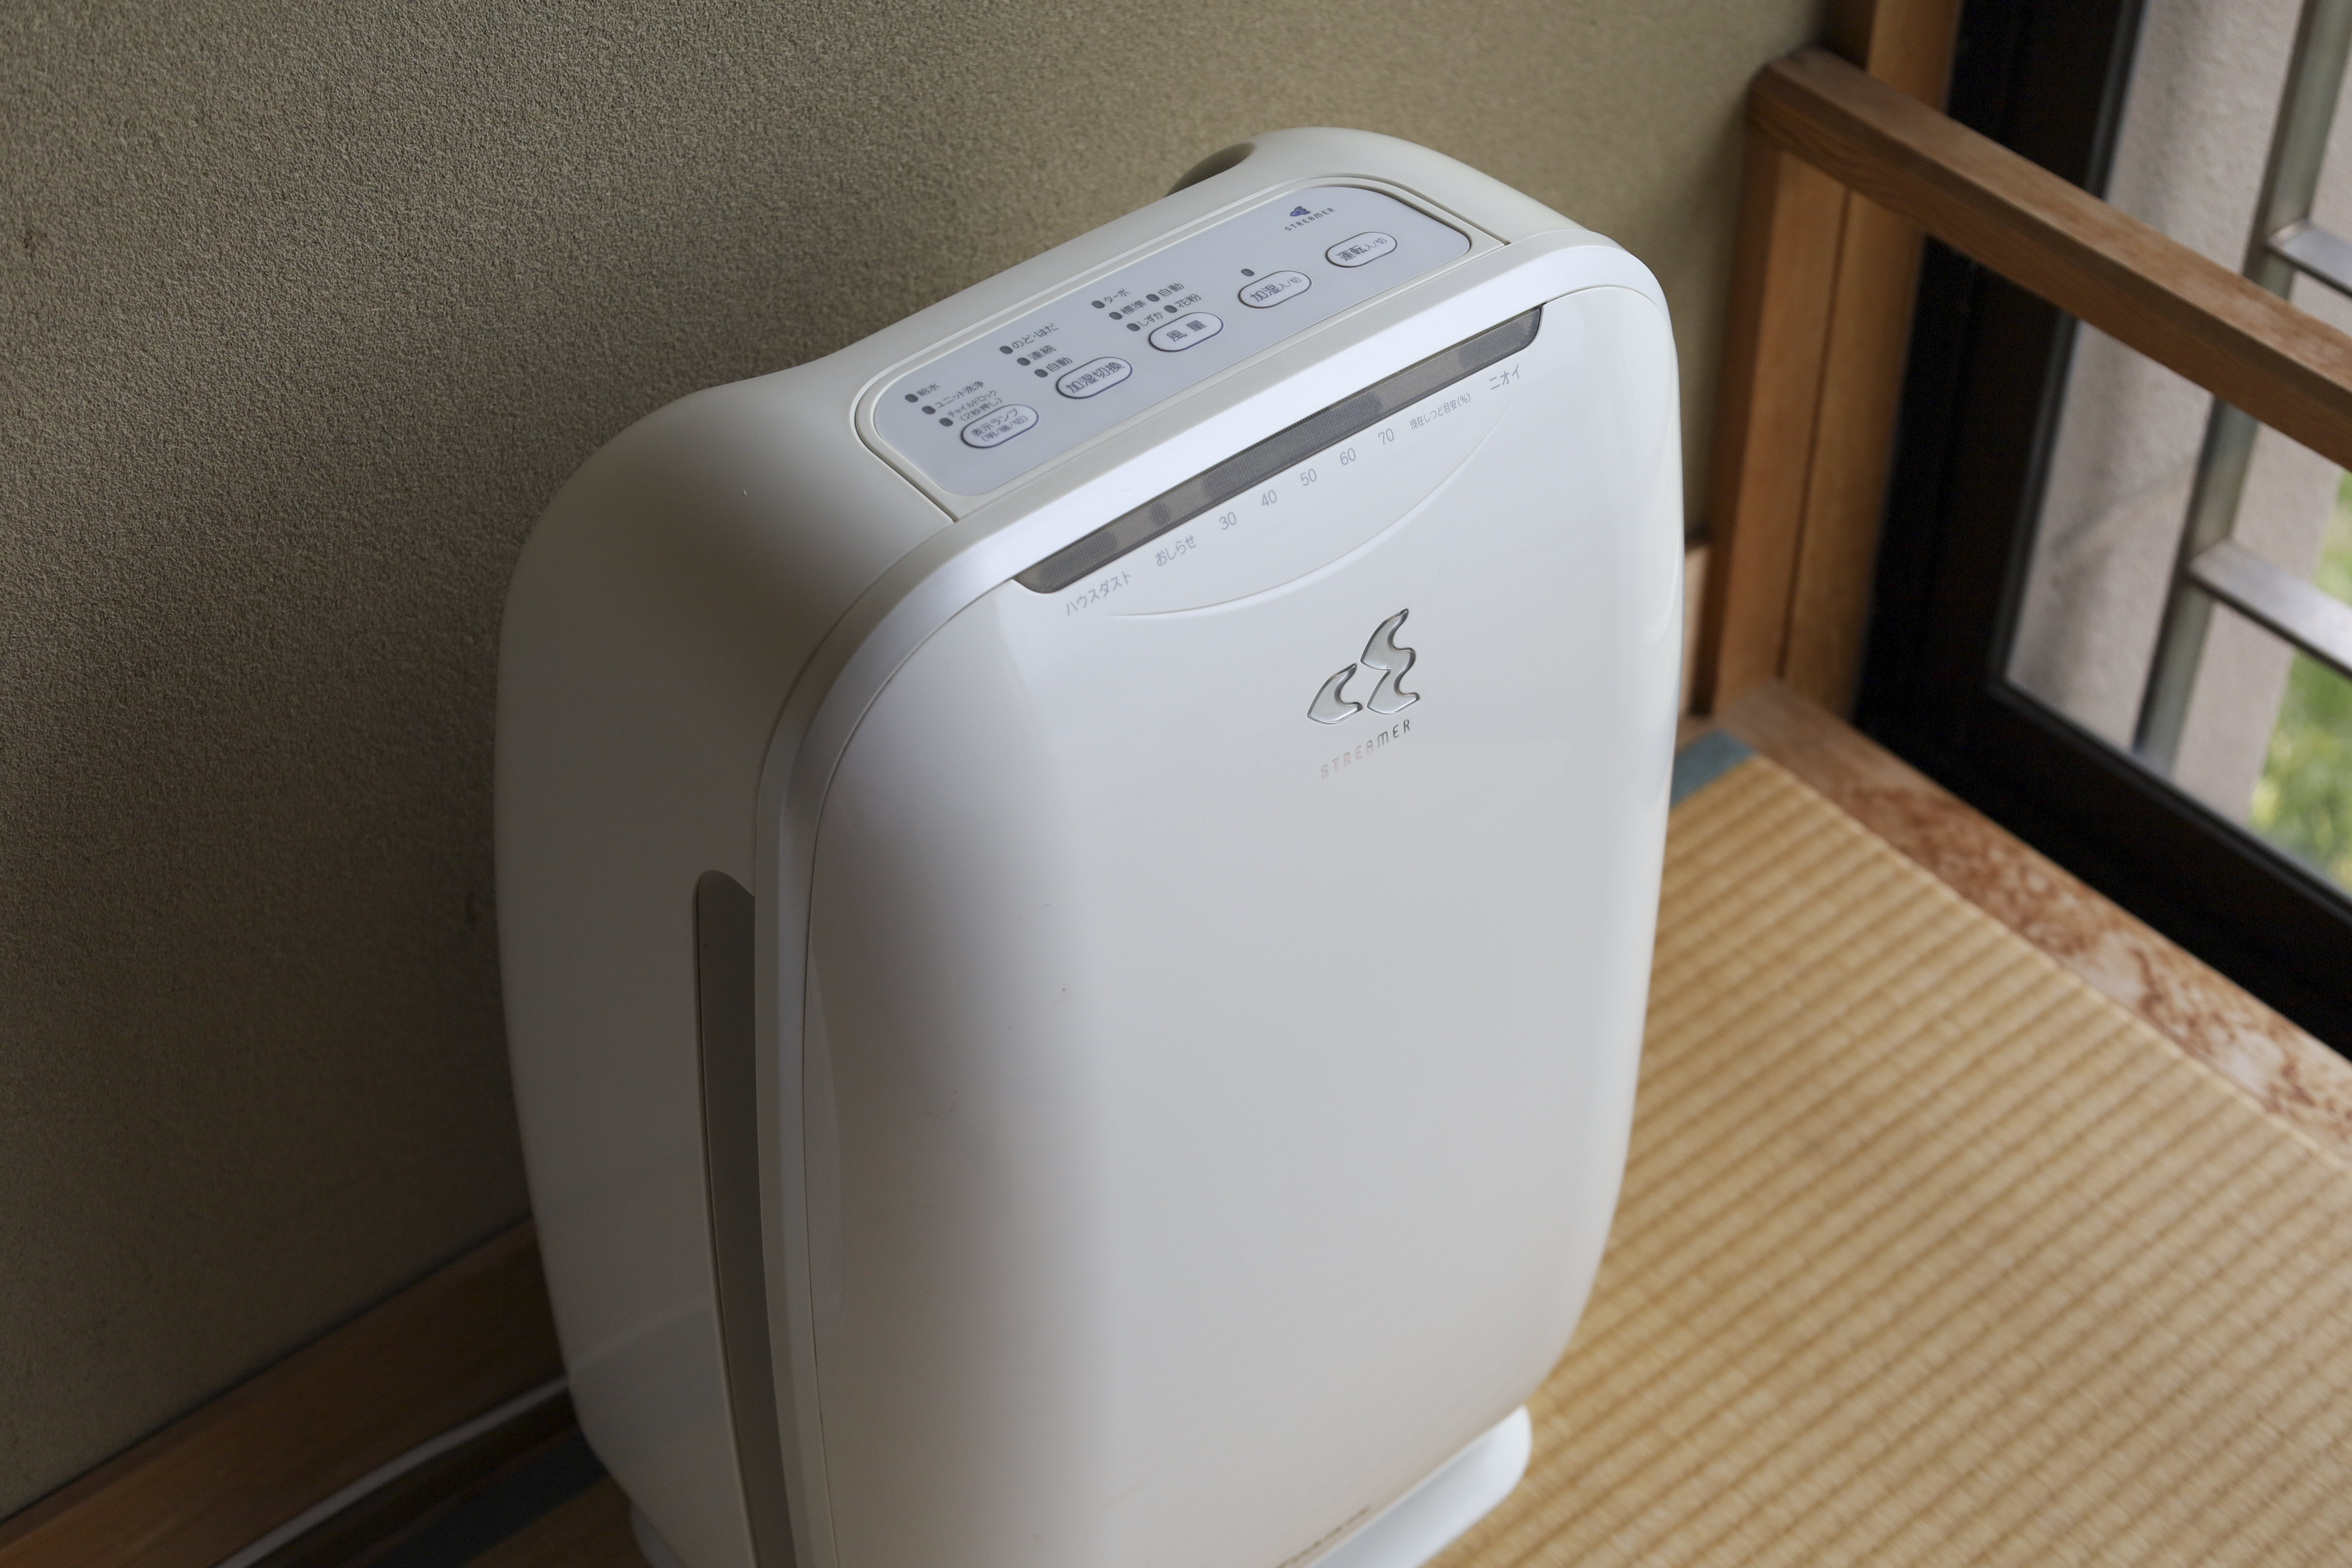 【客室】加湿機能付き空気清浄機